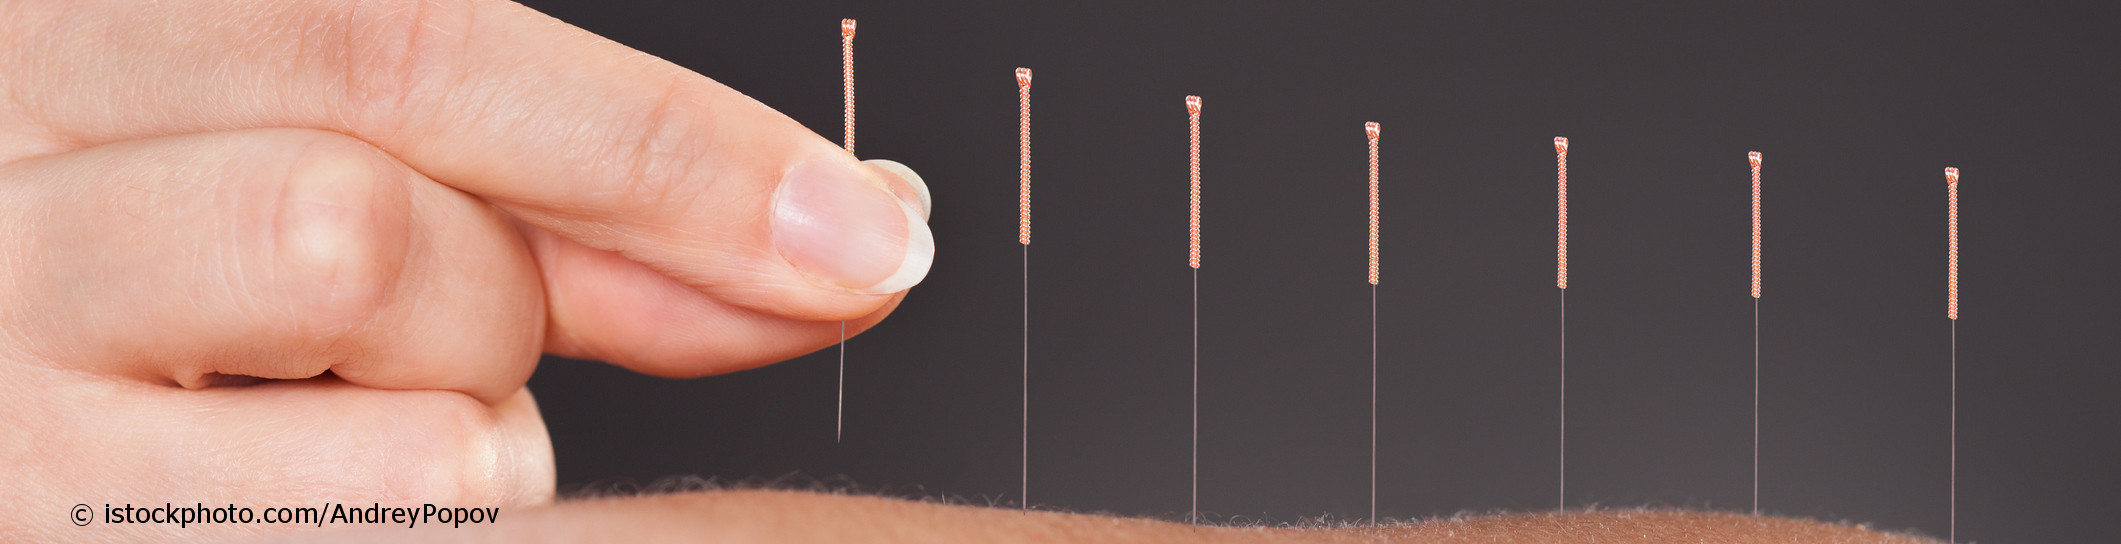 Auf docinsider registrierter Arzt mit Weiterbildung in Akupunktur setzt sieben Akupunkturnadeln in die Haut eines Patienten.